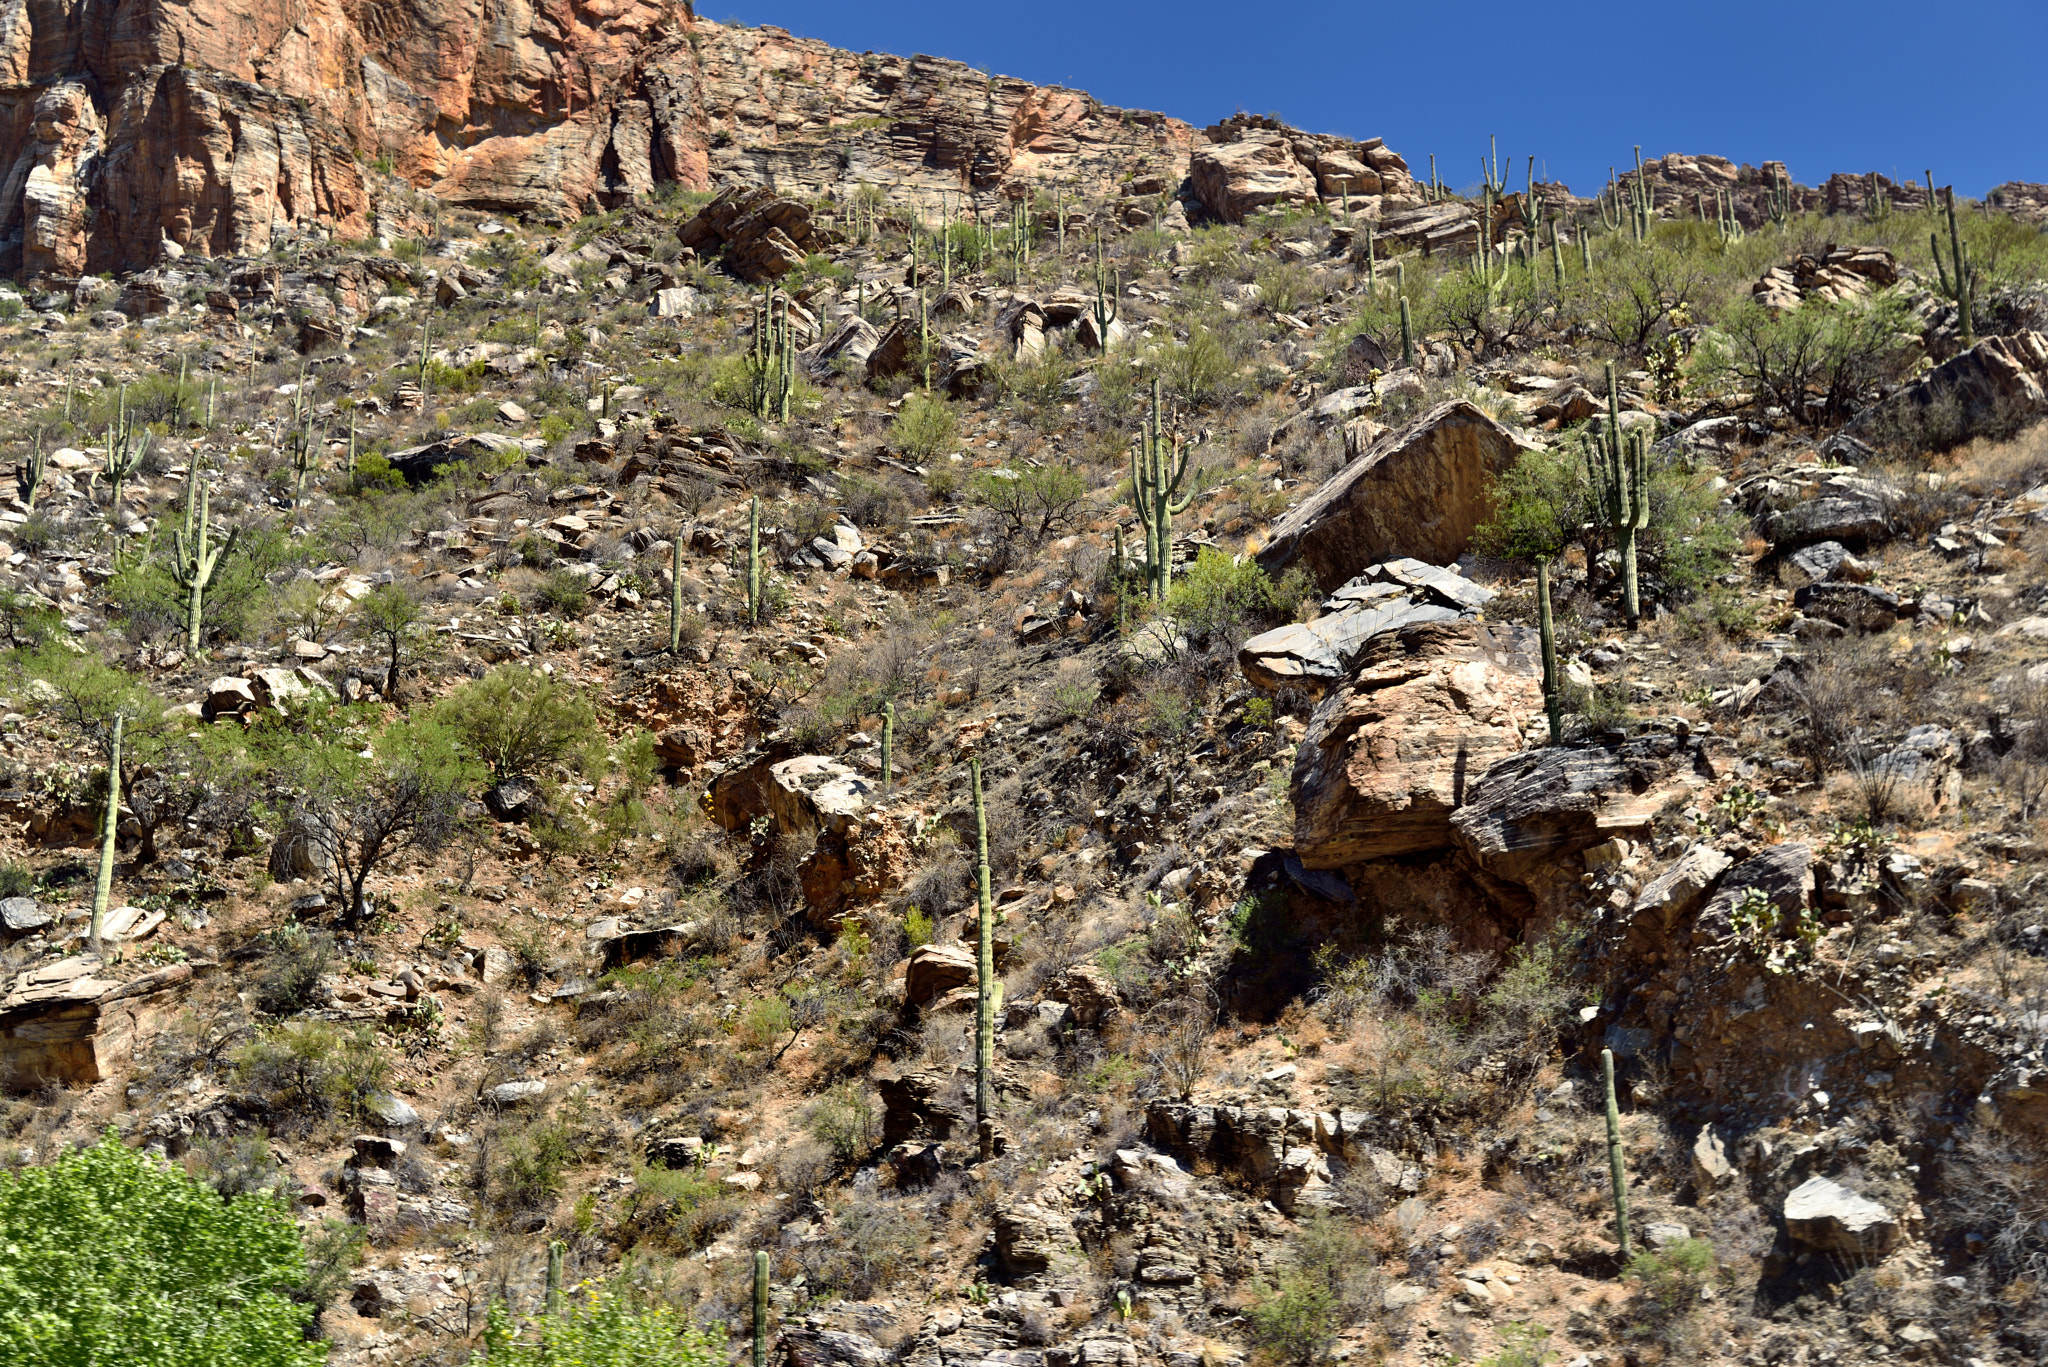 Nikon D800E + Nikon AF-S Nikkor 24-120mm F4G ED VR sample photo. A rugged hillside of rocks, boulders and saguaro cactus photography